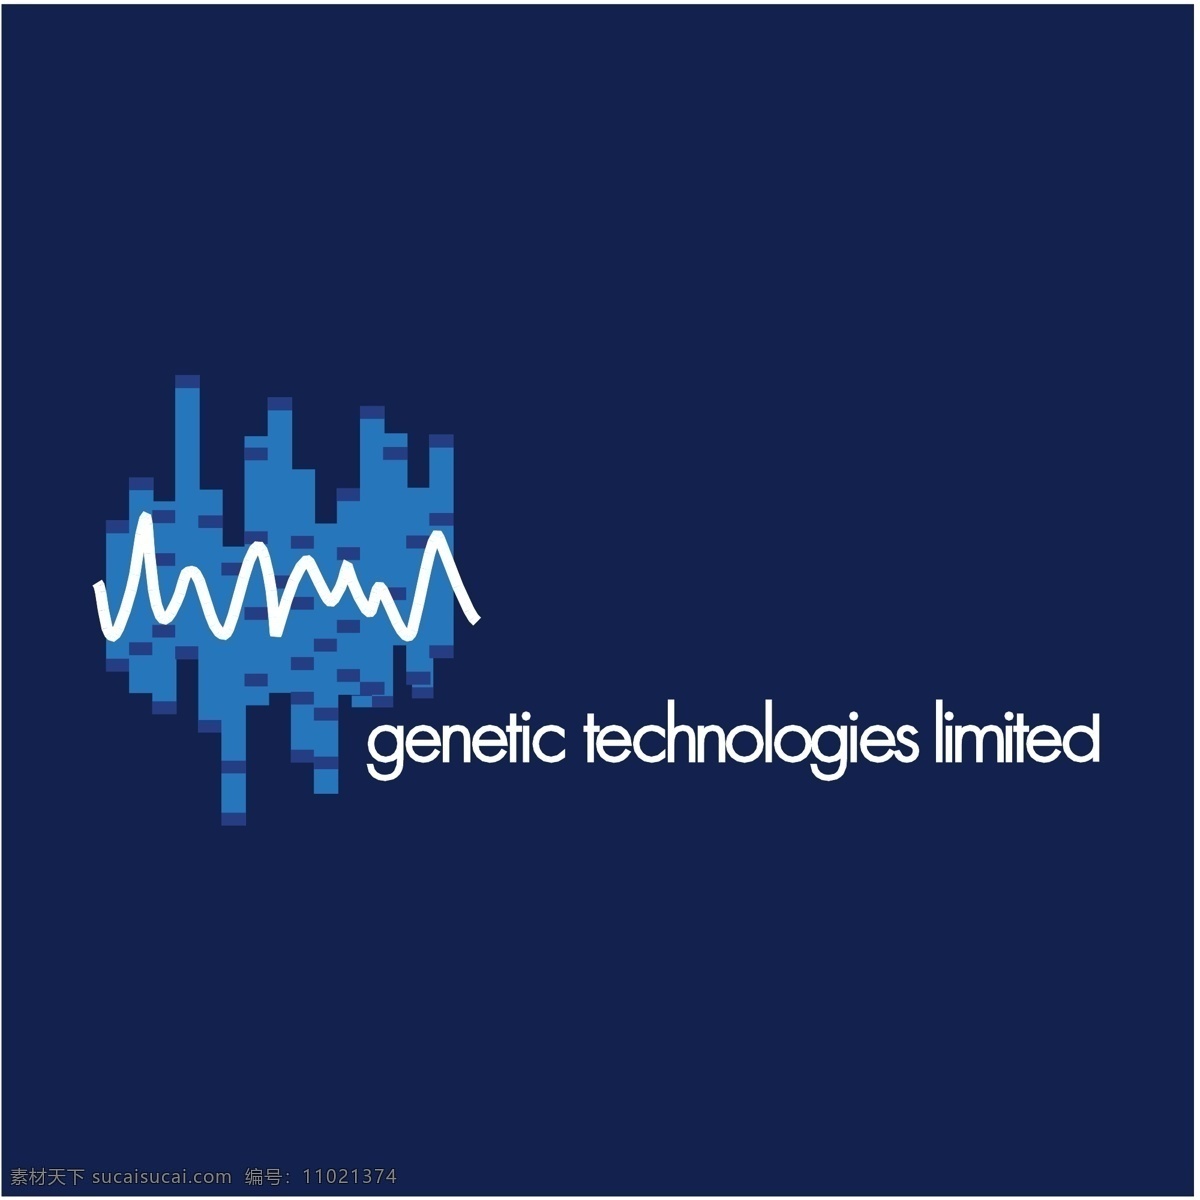 基因 技术 有限公司 遗传 遗传技术 技术的限制 有限的 向量技术 矢量图像 自由载体技术 技术的载体 载体技术 免费技术 载体 蓝色